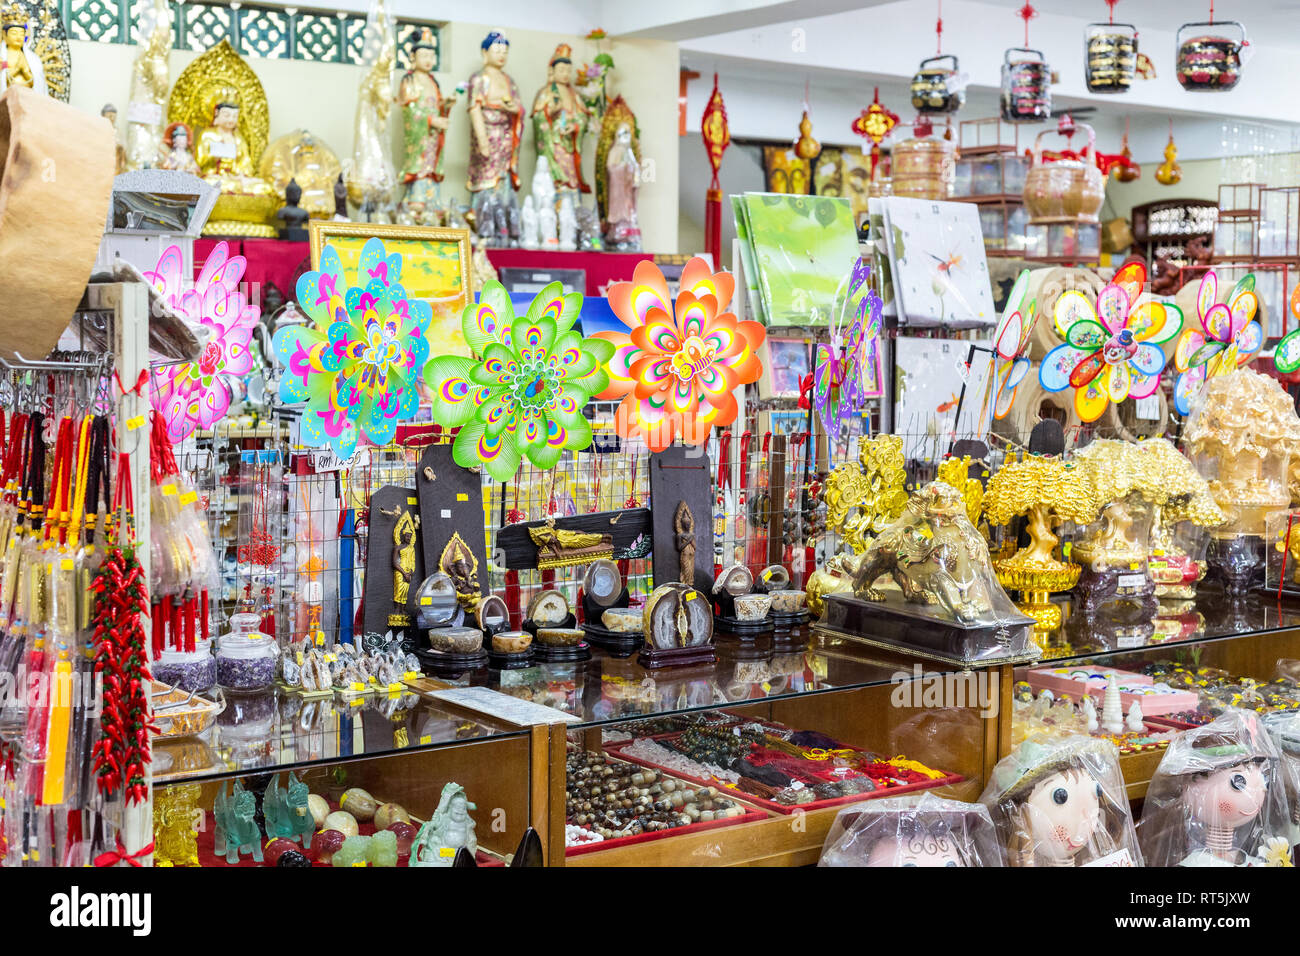 Negozio di souvenir, ninnoli e doni per la vendita nel negozio di articoli da regalo, Kek Lok Si tempio buddista, George Town, Penang, Malaysia. Foto Stock